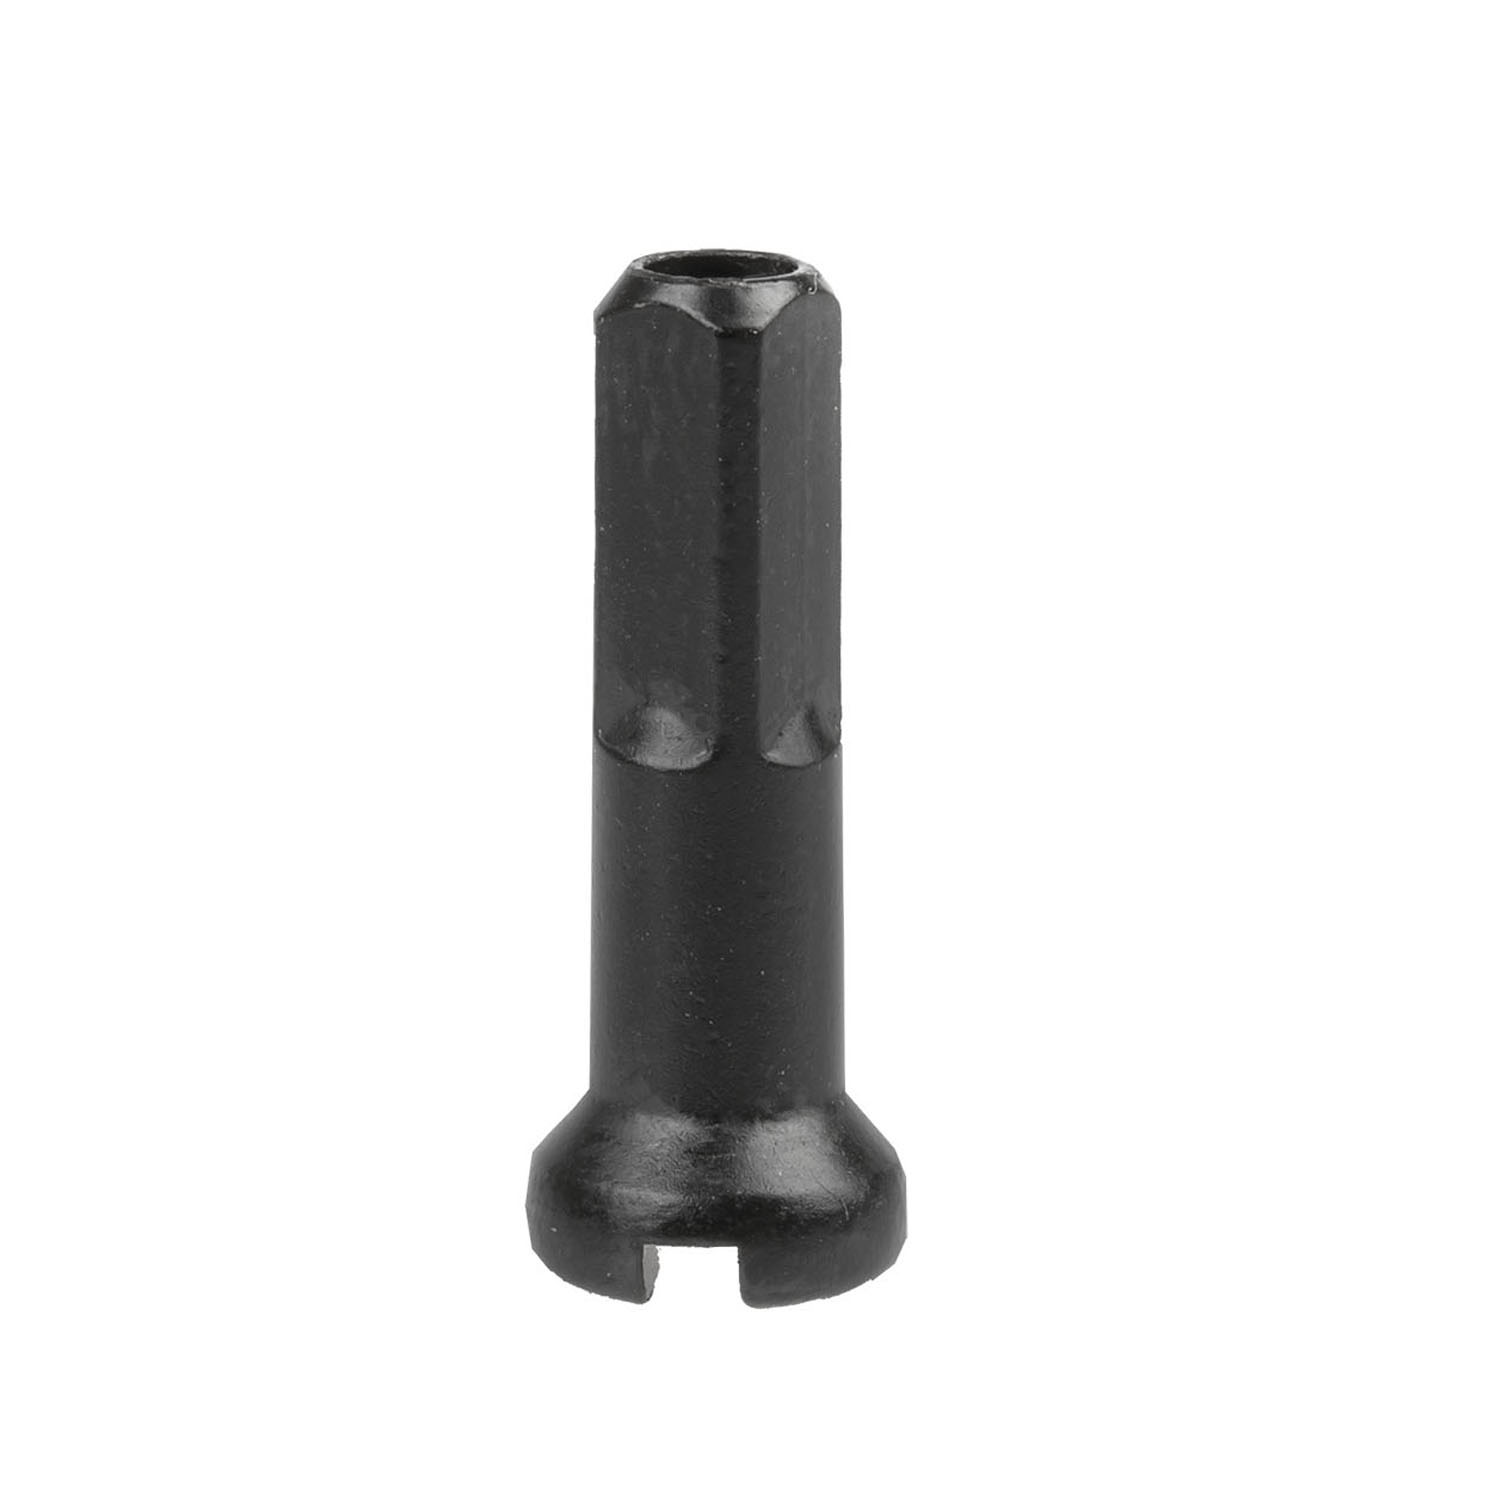 CN-Nippel Messing 14 mm für 2 mm Speichen in Schwarz